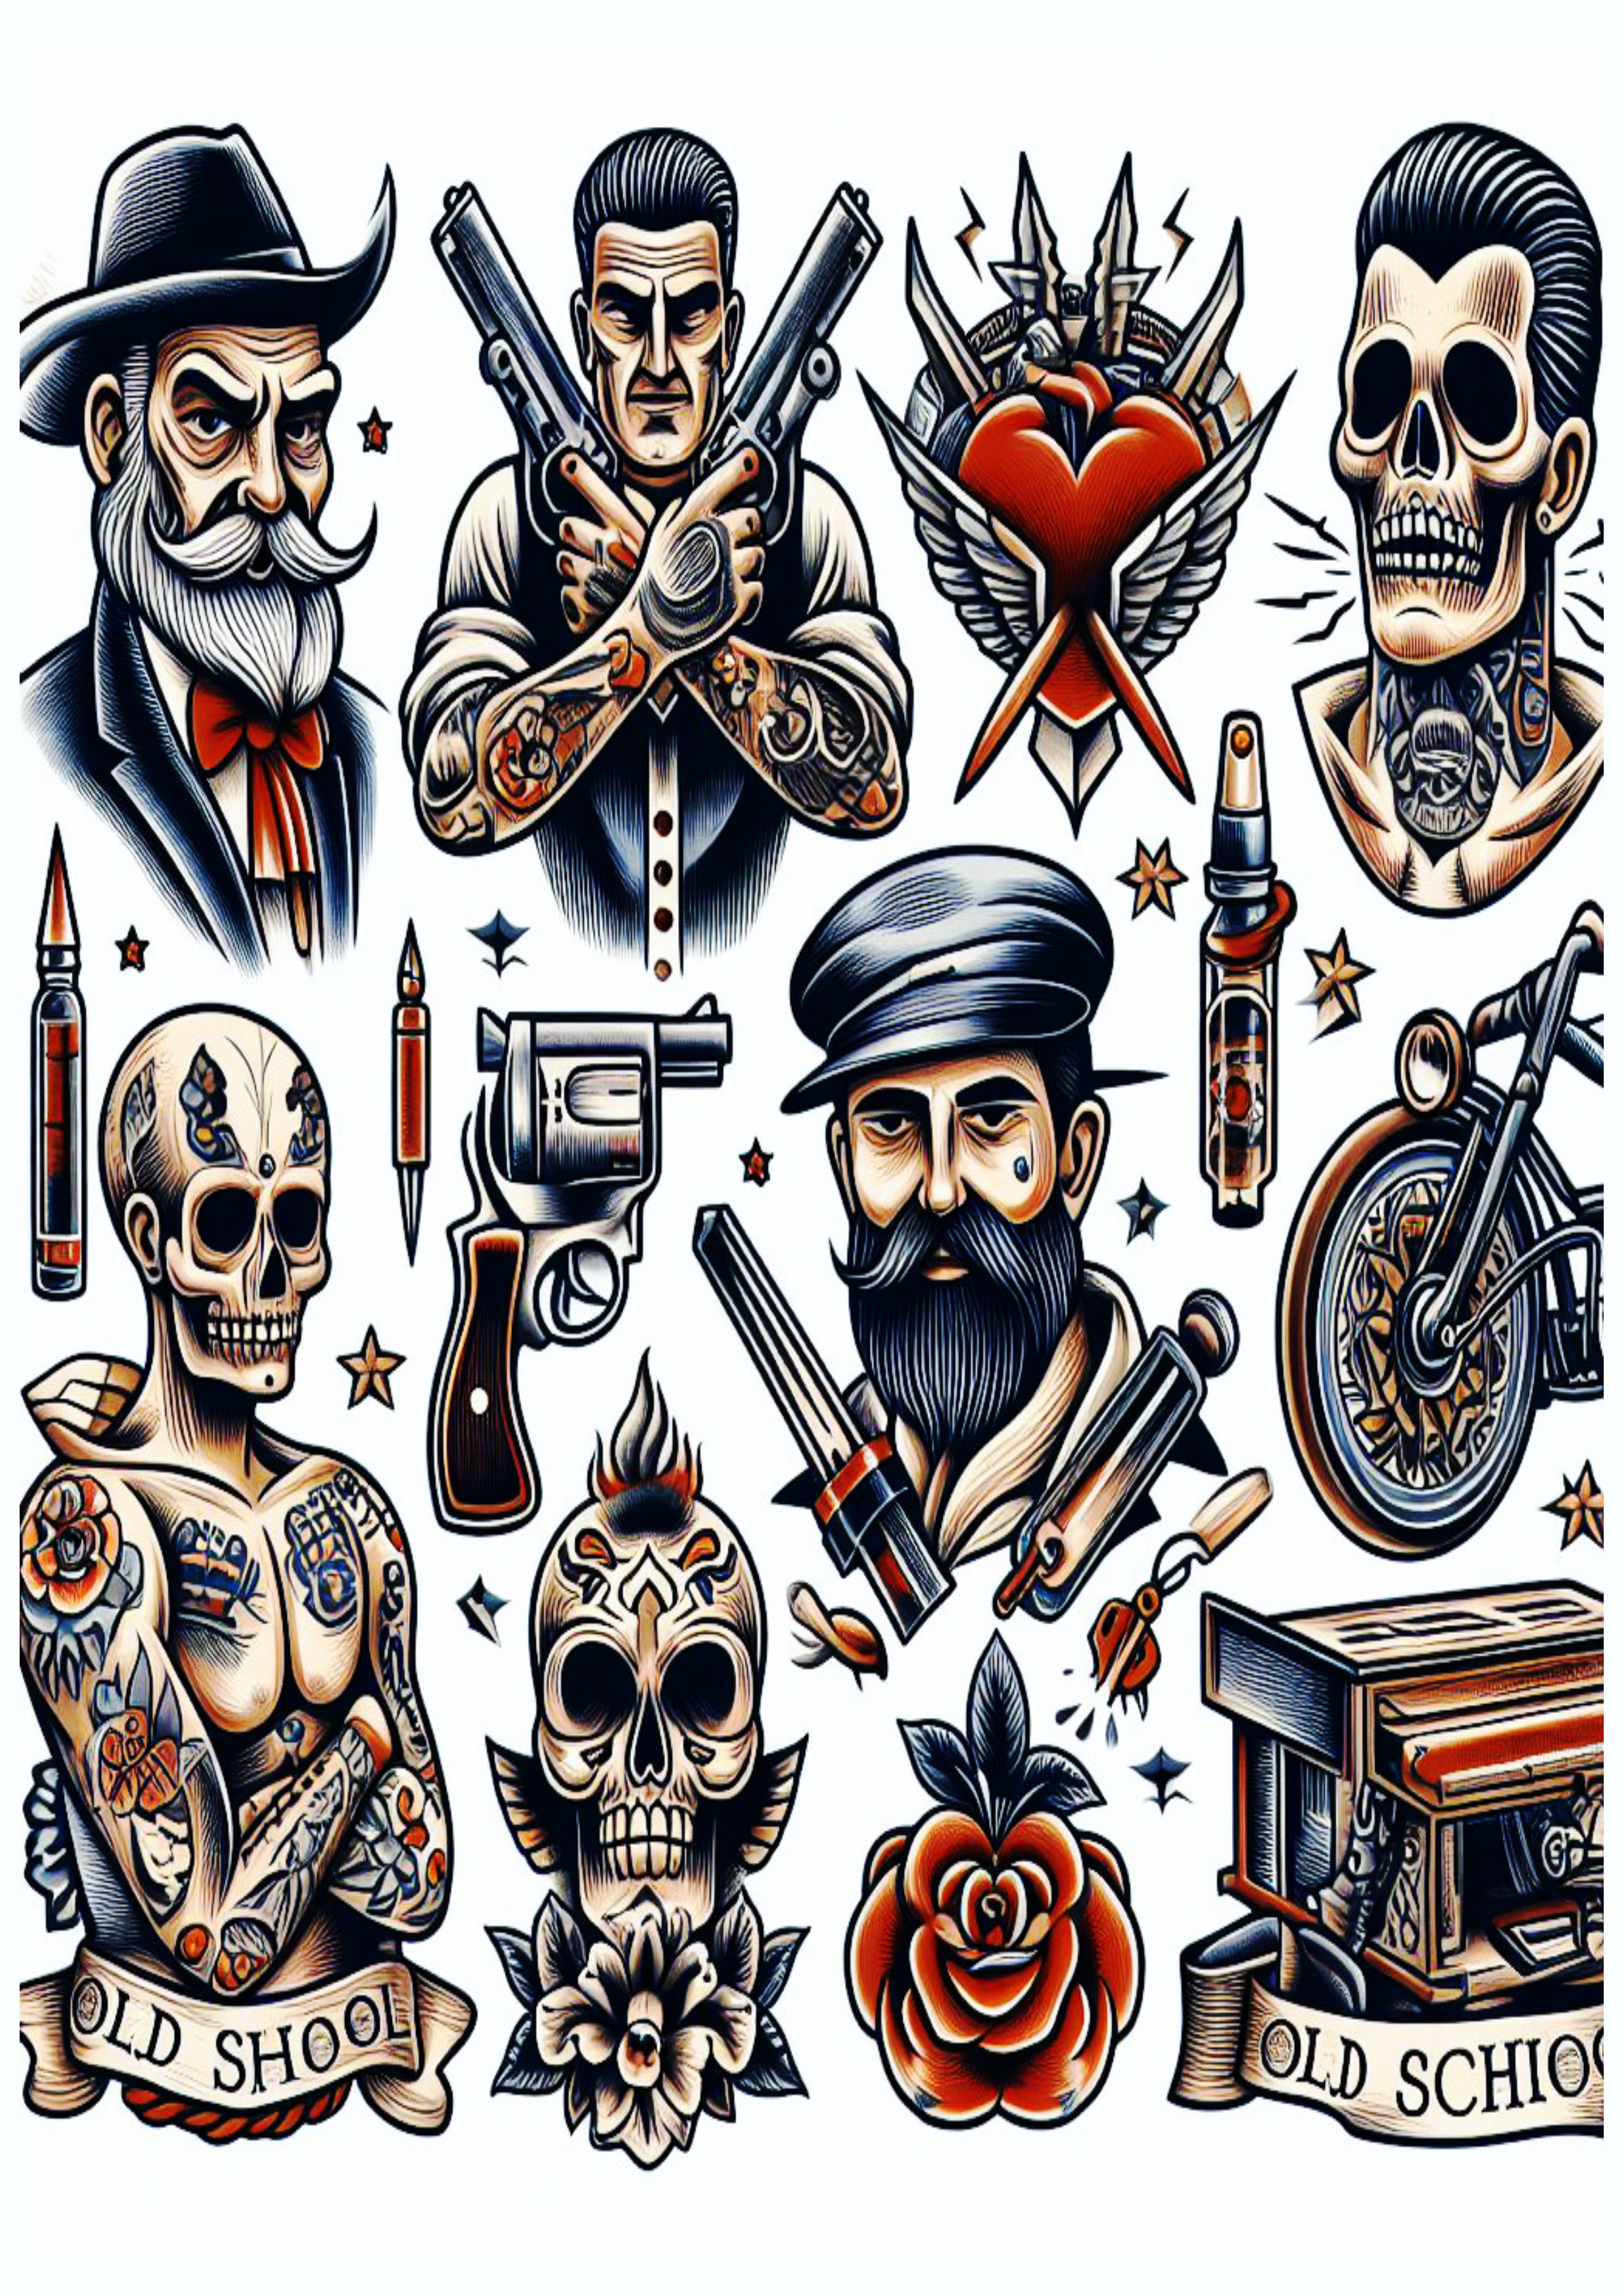 Ideias variadas para tatuagens old school artes conceituais png caveiras